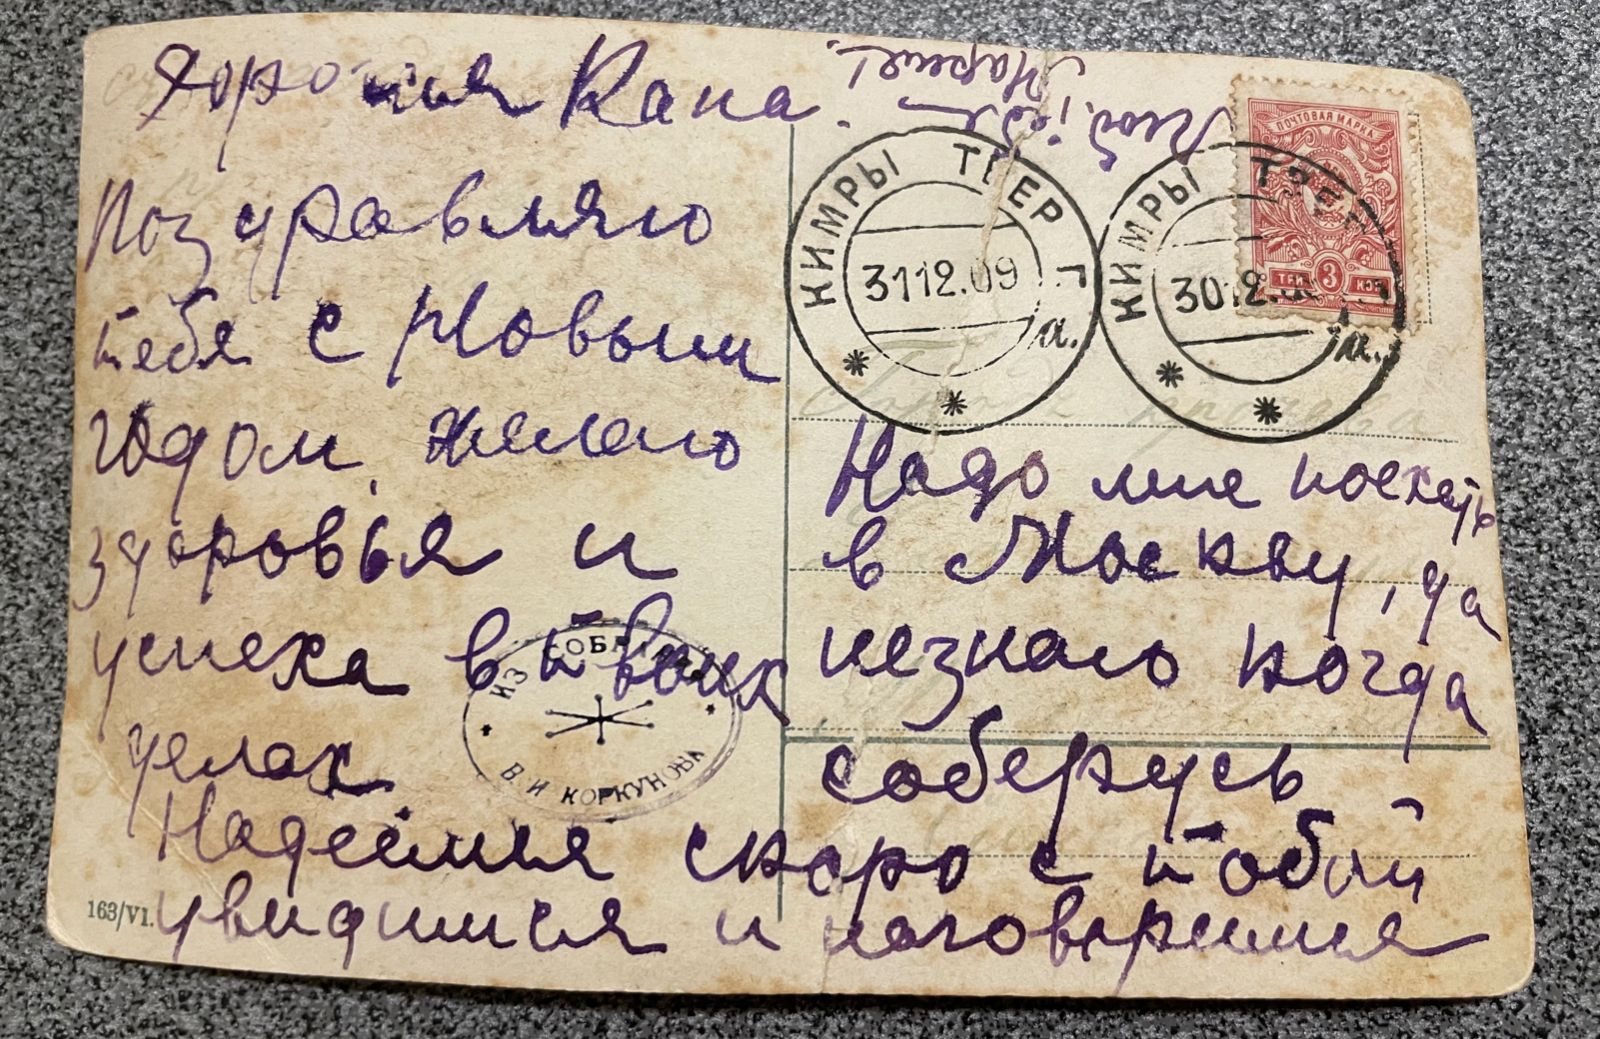 Подпись на карточке: «Дорогая Капа. Поздравляю с Новым годом. Желаю здоровья и успеха в твоих делах. Надо мне поехать в Москву, да не знаю, когда соберусь». Судя по штампу, открытку отправили из Твери 30 декабря 1909 года.